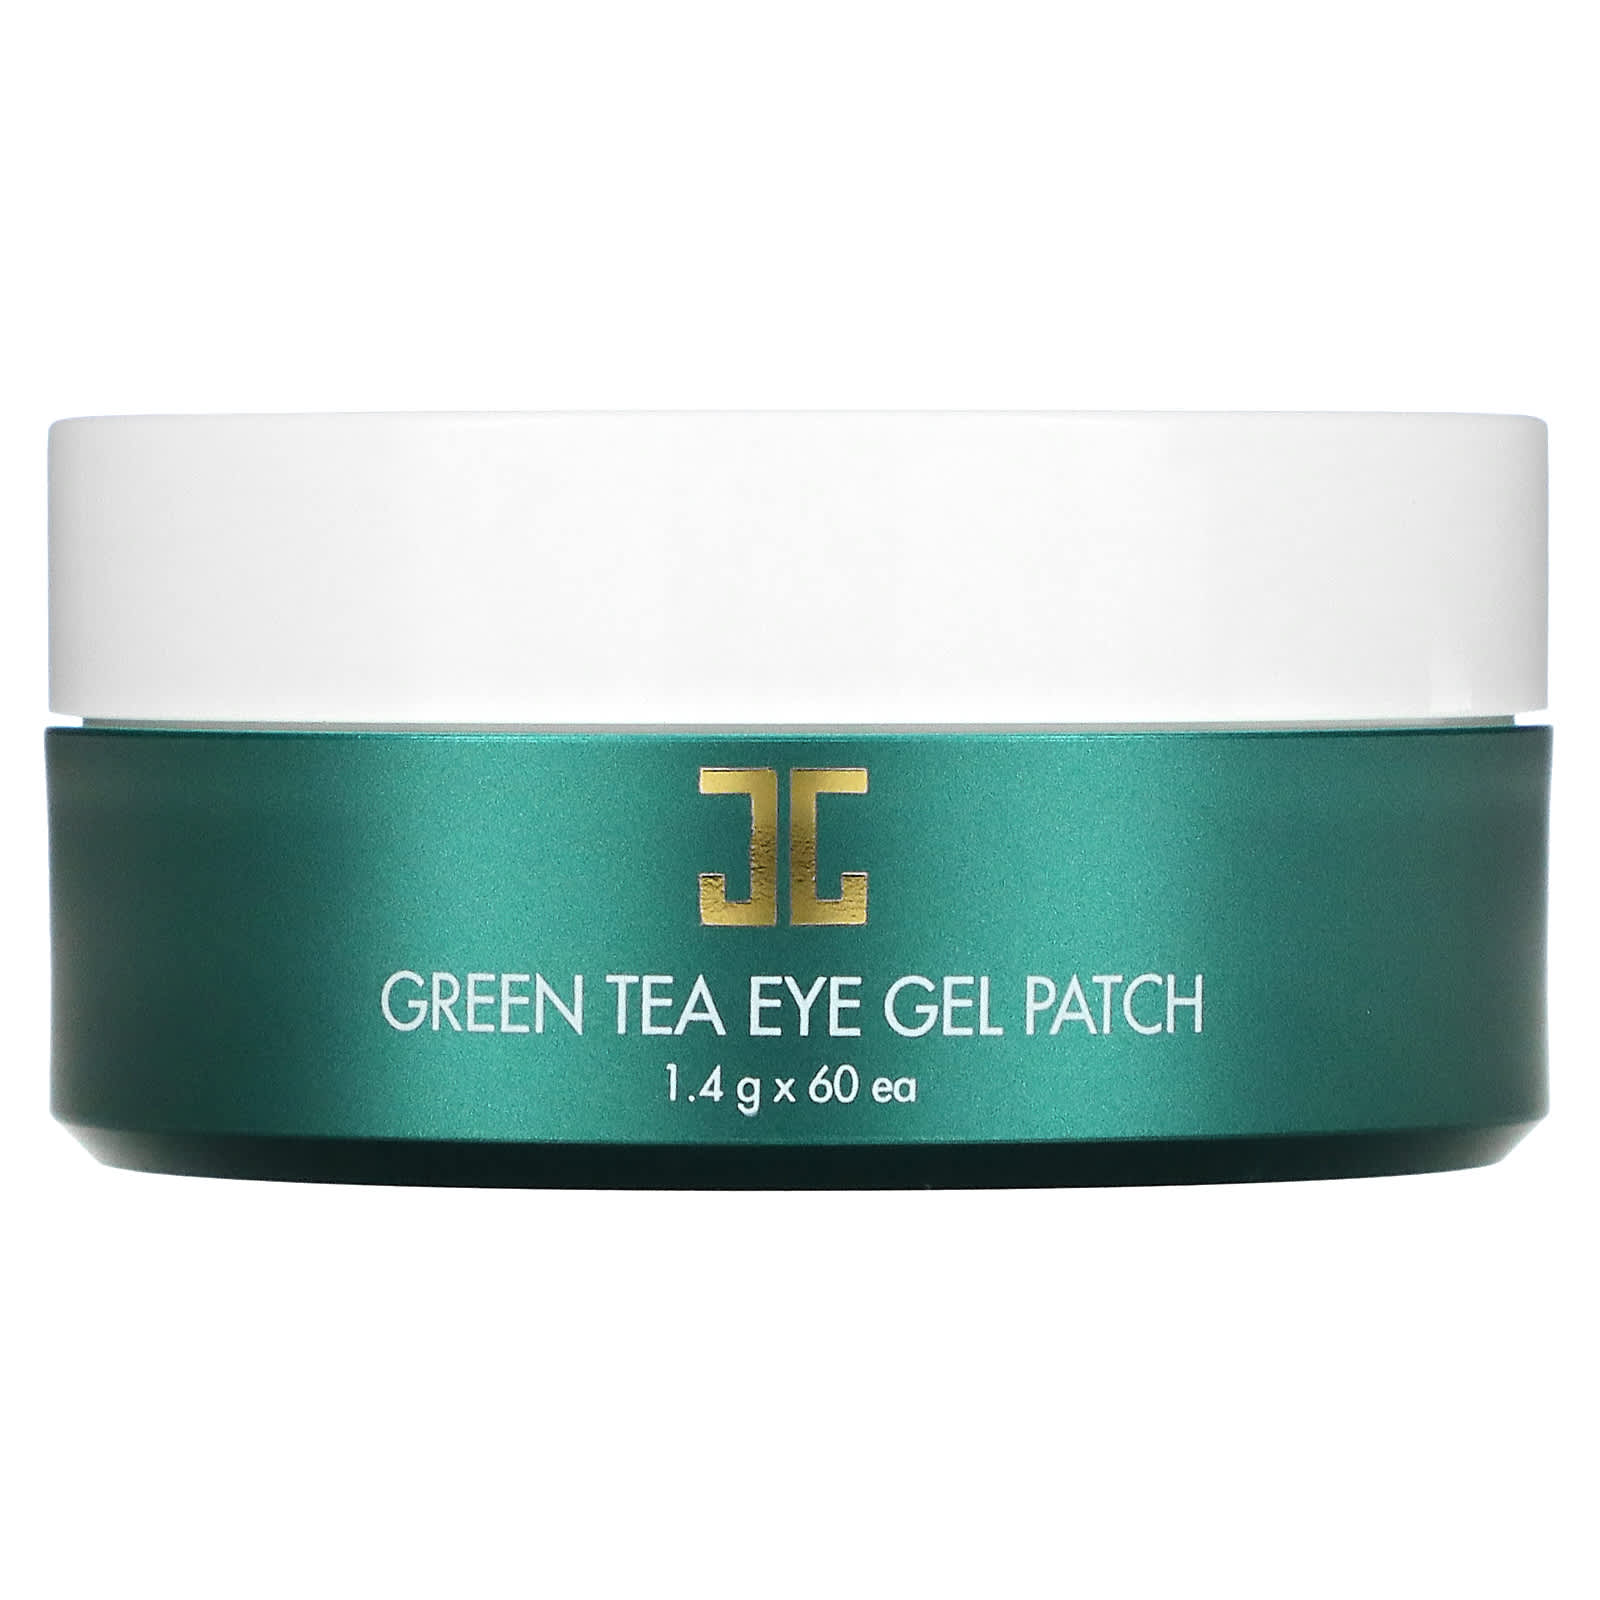 Гель - Патч Jayjun Cosmetic для кожи вокруг глаз с зеленым чаем, 60 патчей по 1,4 г jayjun cosmetic гелевый патч для глаз с зеленым чаем 60 патчей 1 4 г каждый